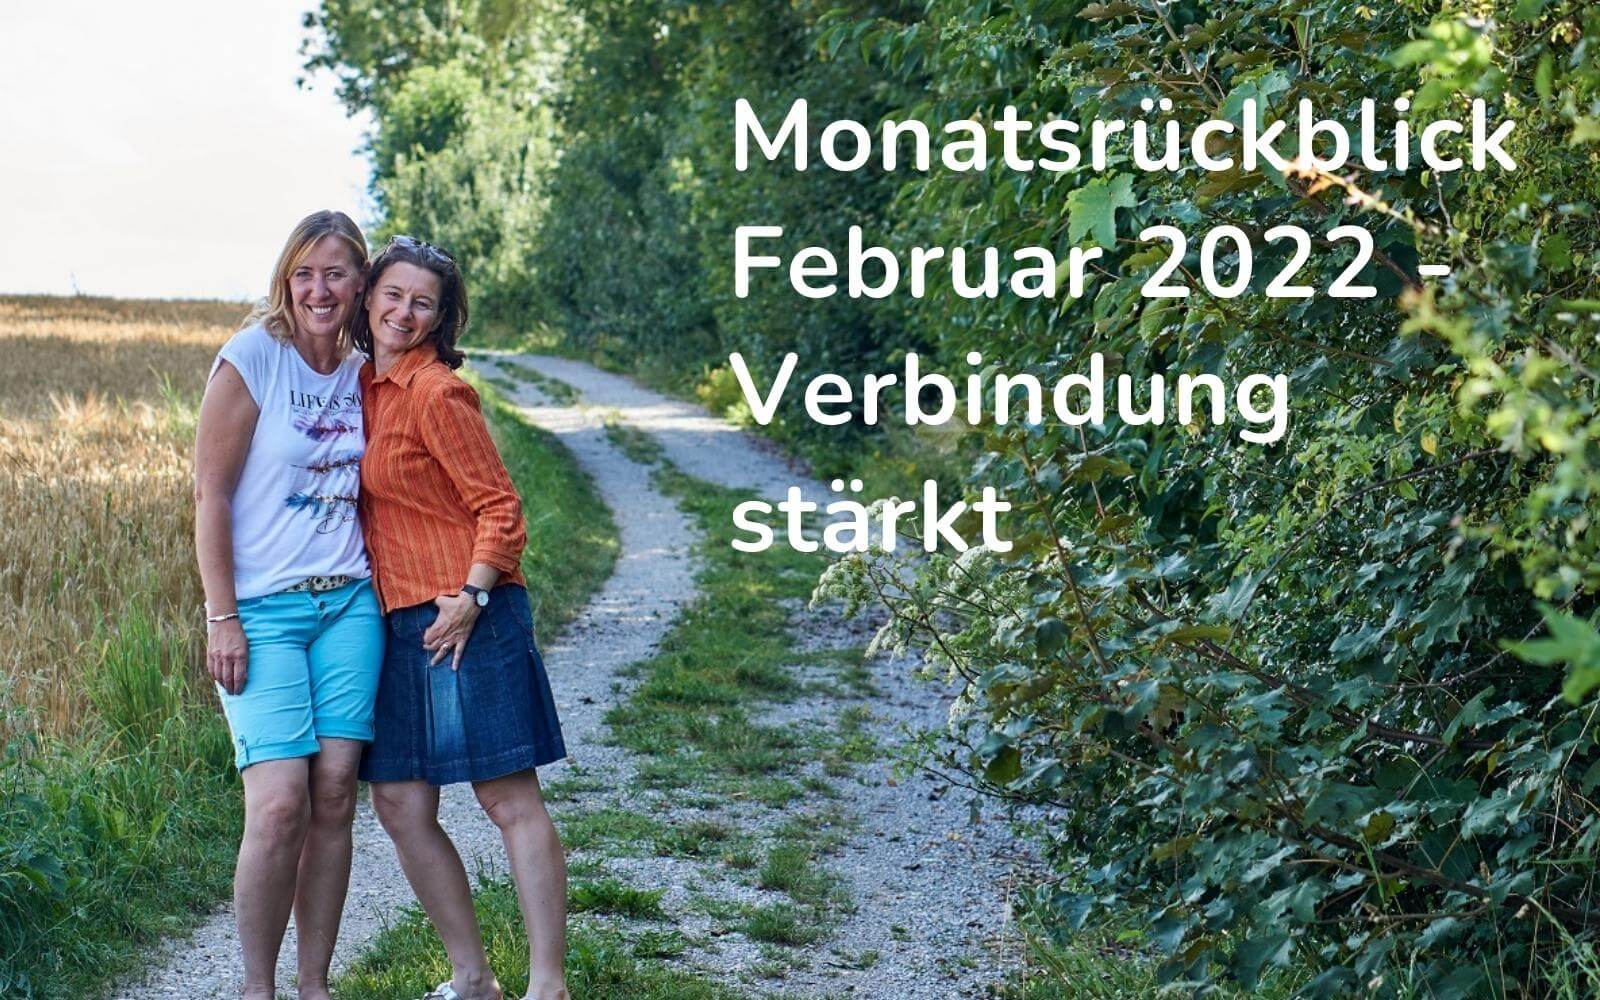 Header für den Blogartikel: Ein Waldweg, zwei Frauen umarmen sich. Überschrift: Monatsrückblick Februar 2022 - Verbindung stärkt